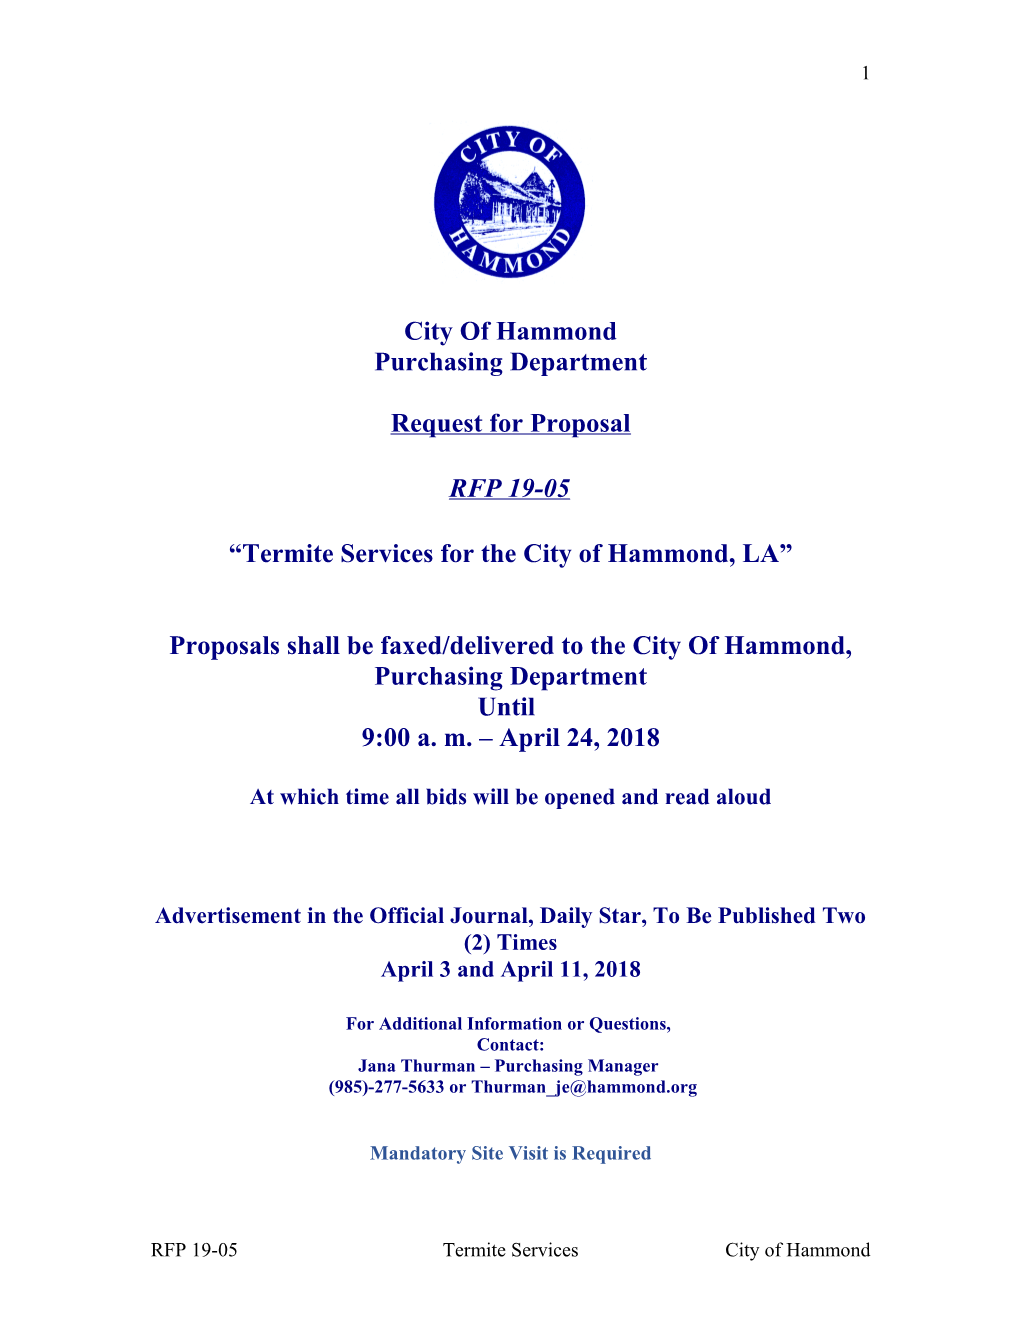 Termite Services for the City of Hammond, LA